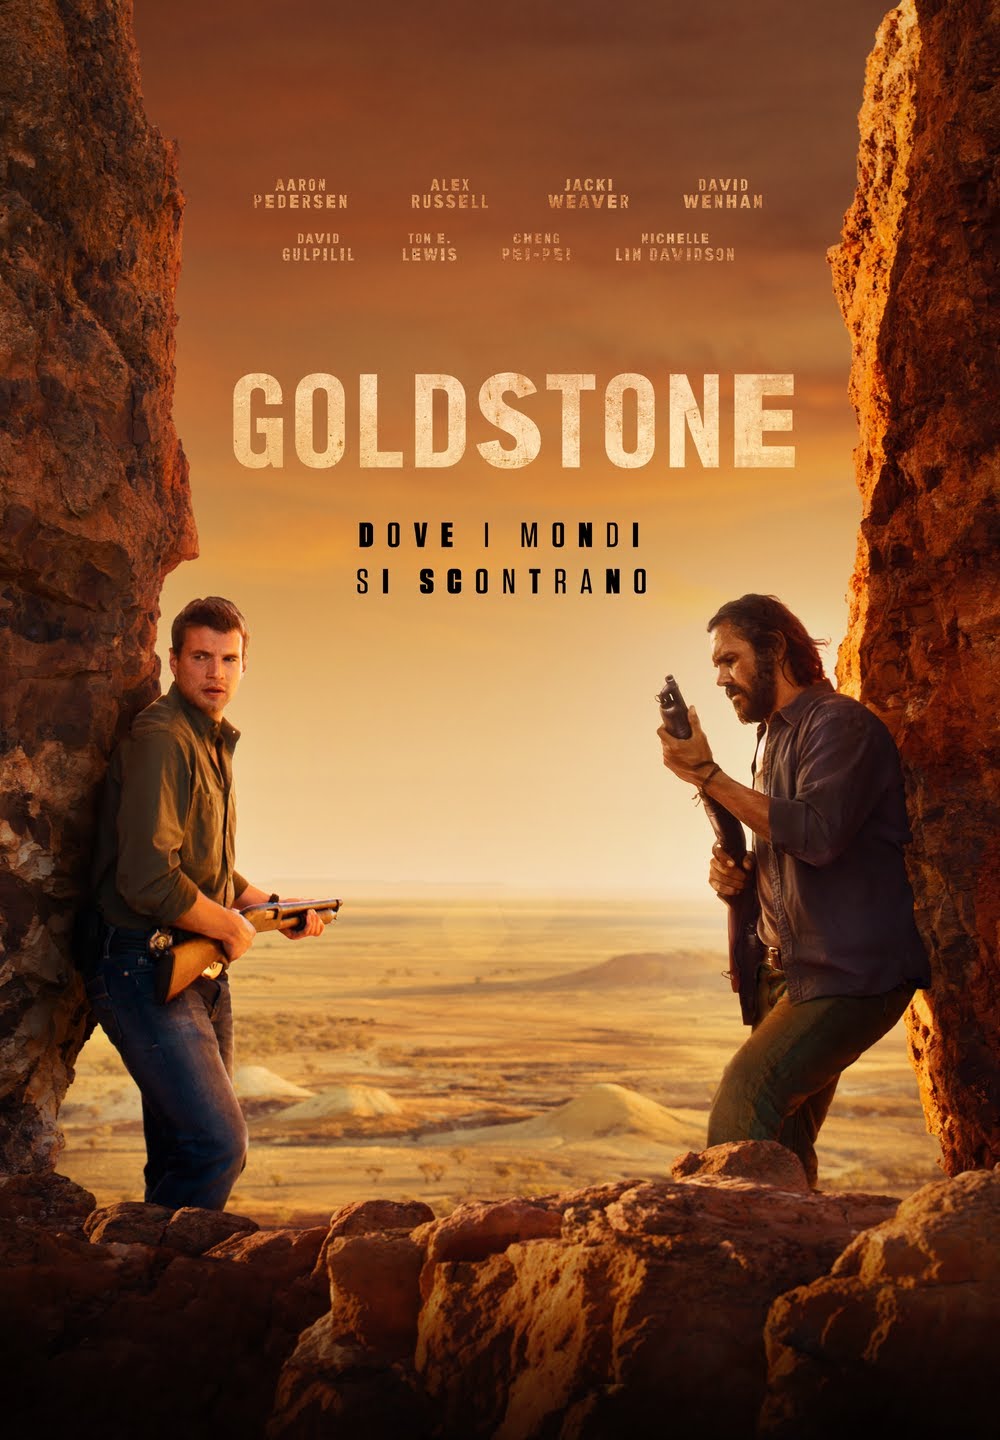 Goldstone – Dove i mondi si scontrano [HD] (2016)